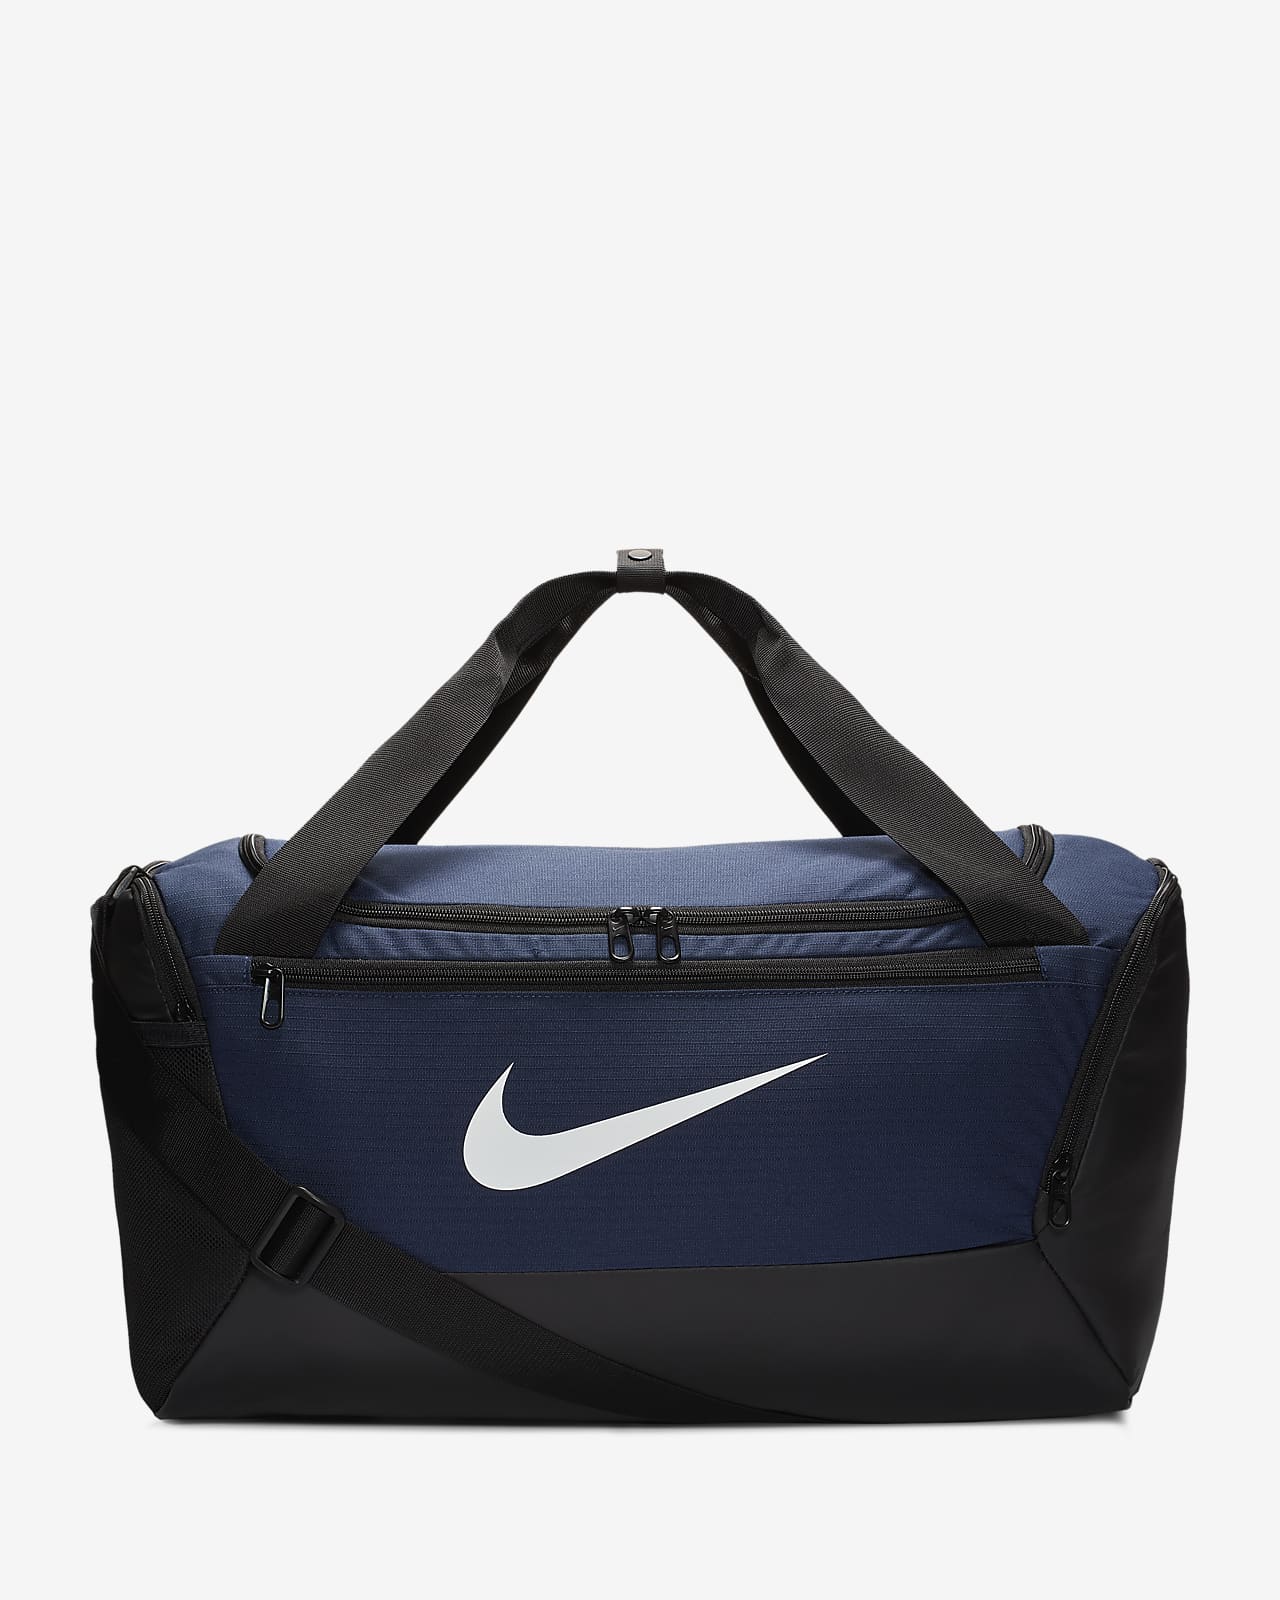 กระเป๋า Duffel เทรนนิ่ง Nike Brasilia (ไซส์ S)